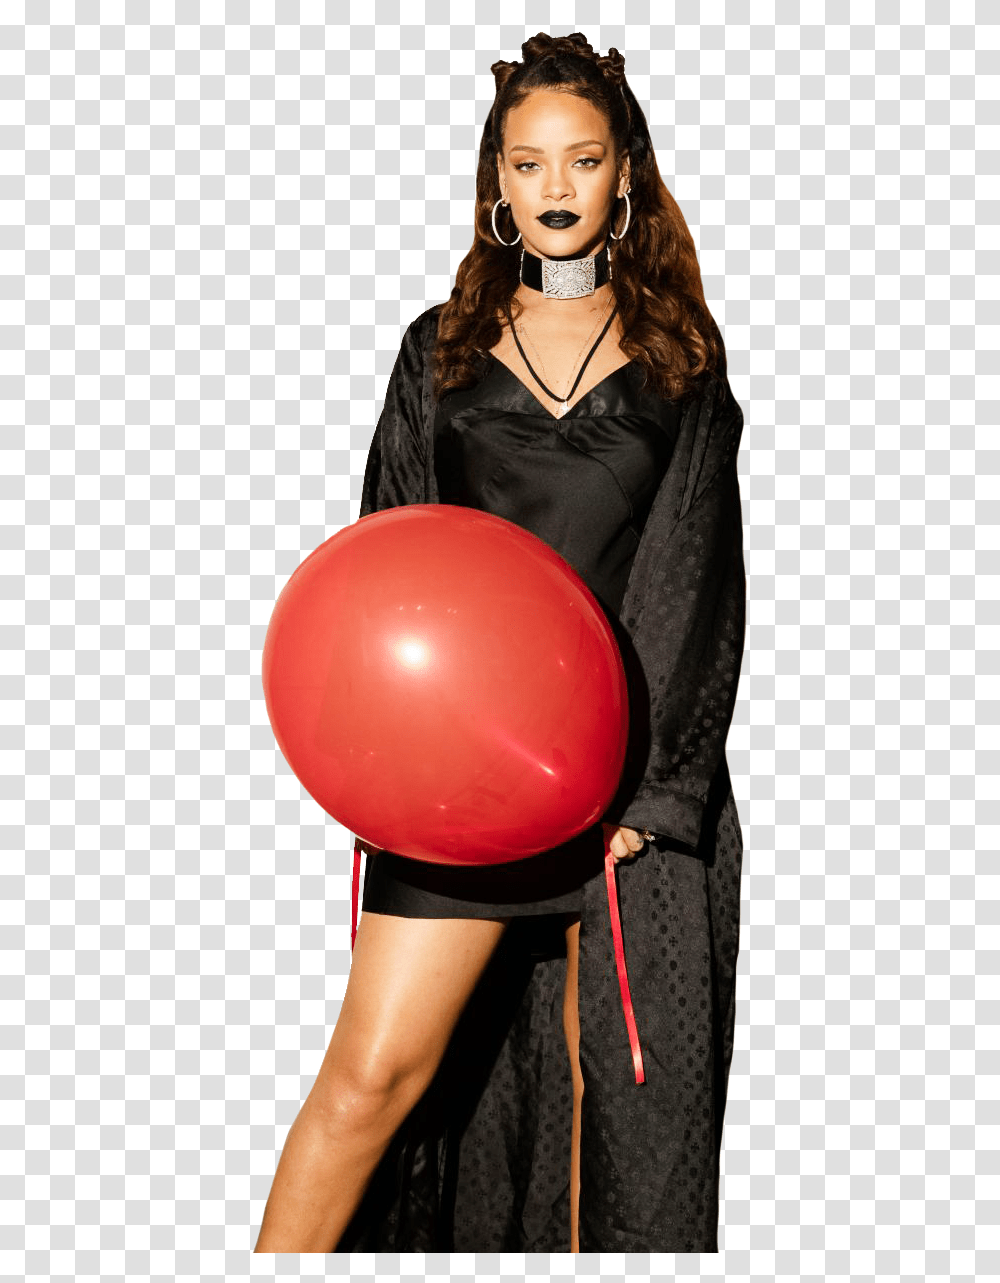 Rihanna By Maarcopngs Rihanna, Ball, Balloon, Person, Human Transparent Png